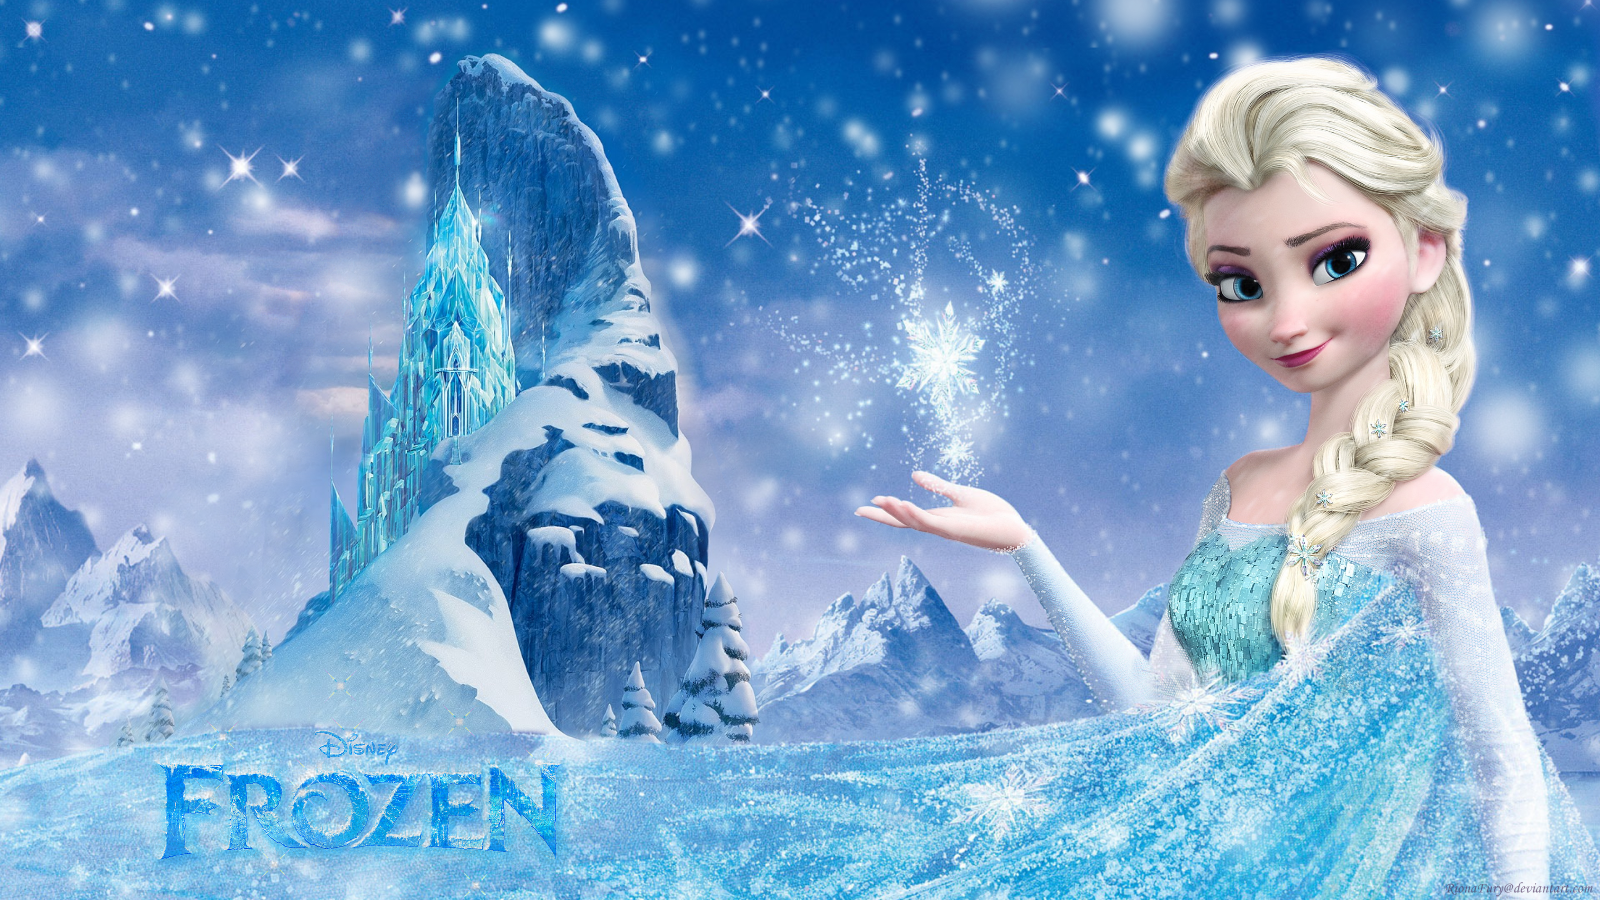 Frozen Elsa Frozen Wallpaper 37732274 Fanpop 1600x900